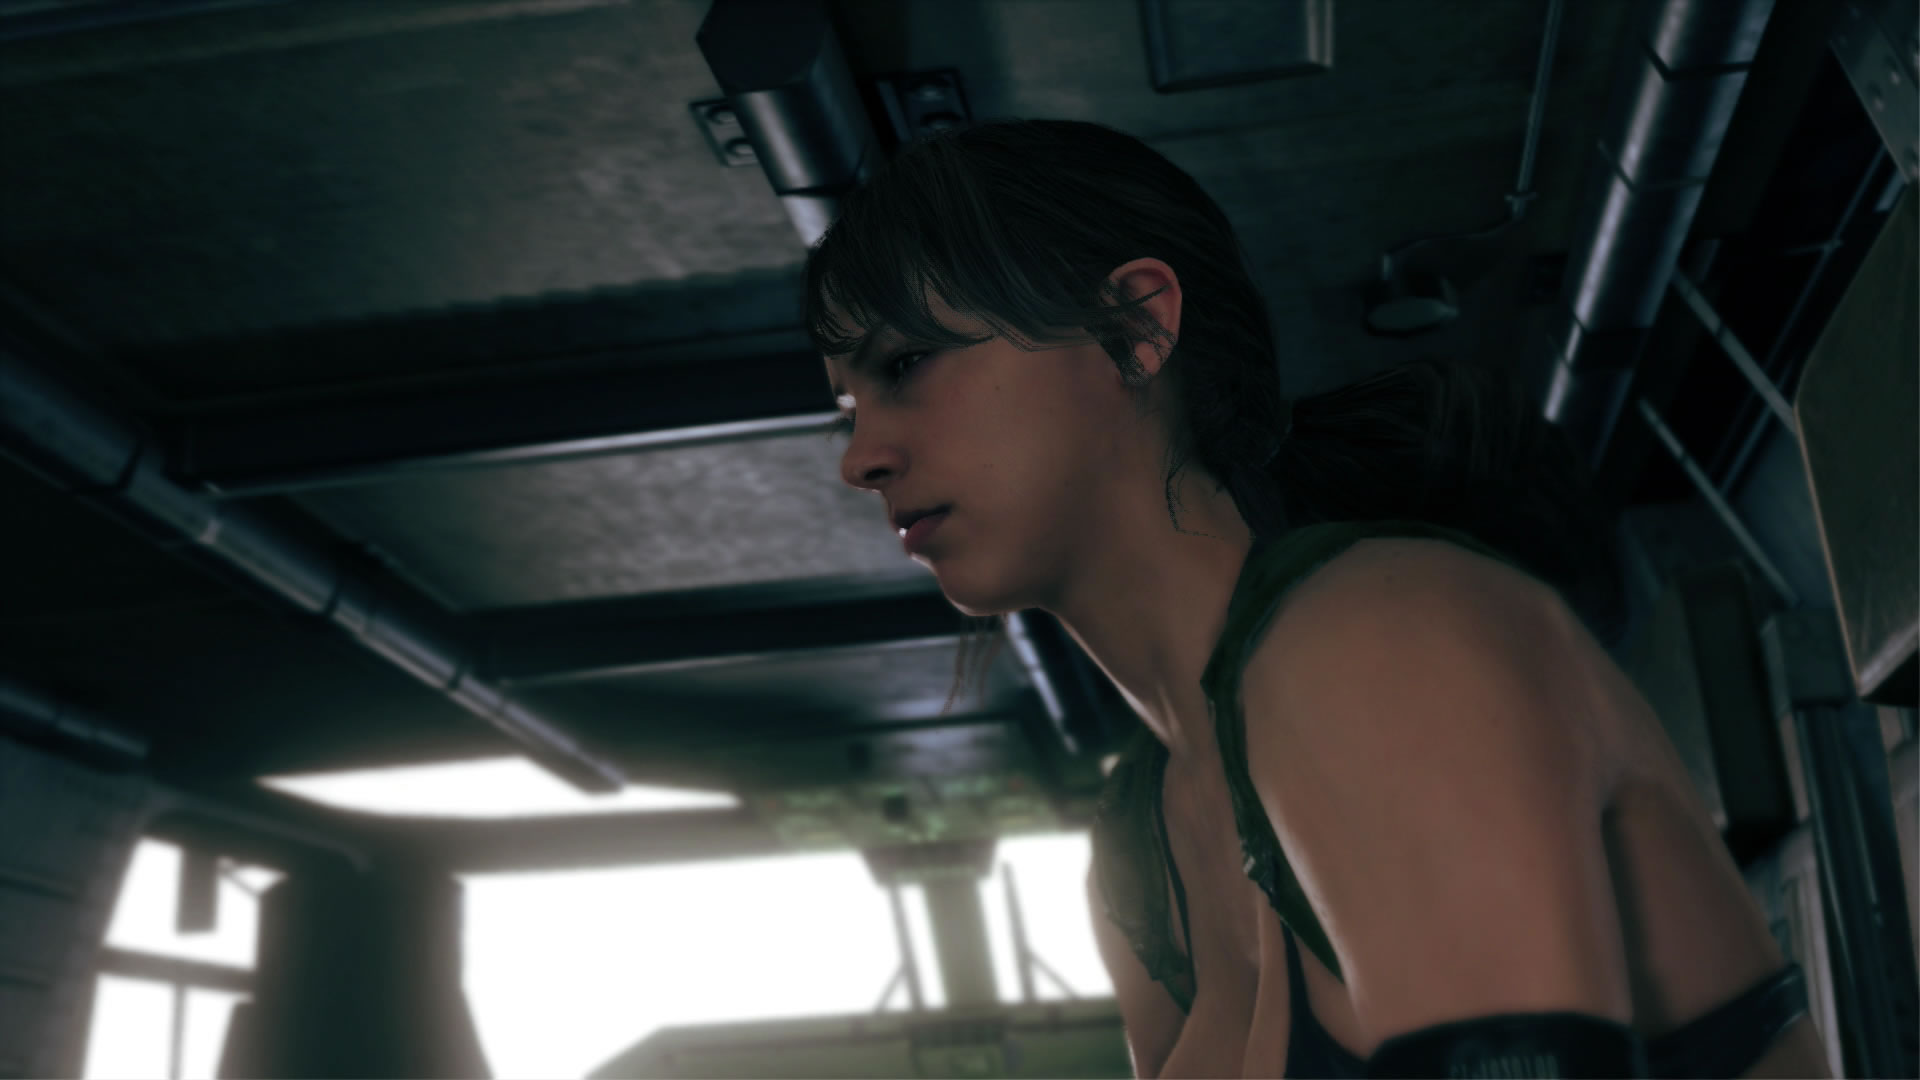 Une averse d'images de Metal Gear Solid V : The Phantom Pain